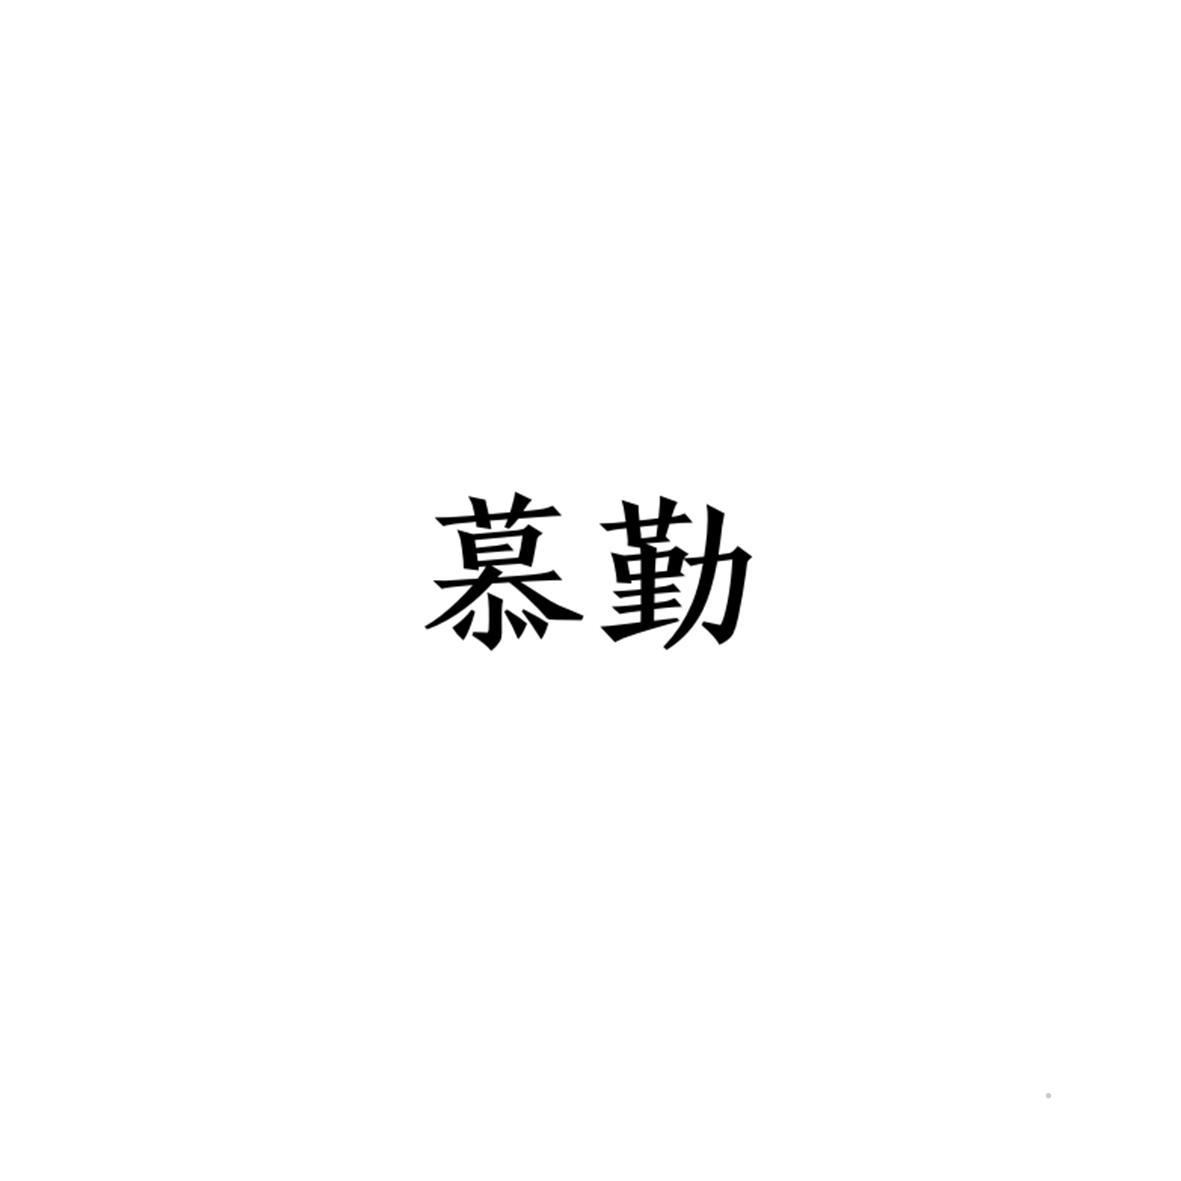 慕勤logo